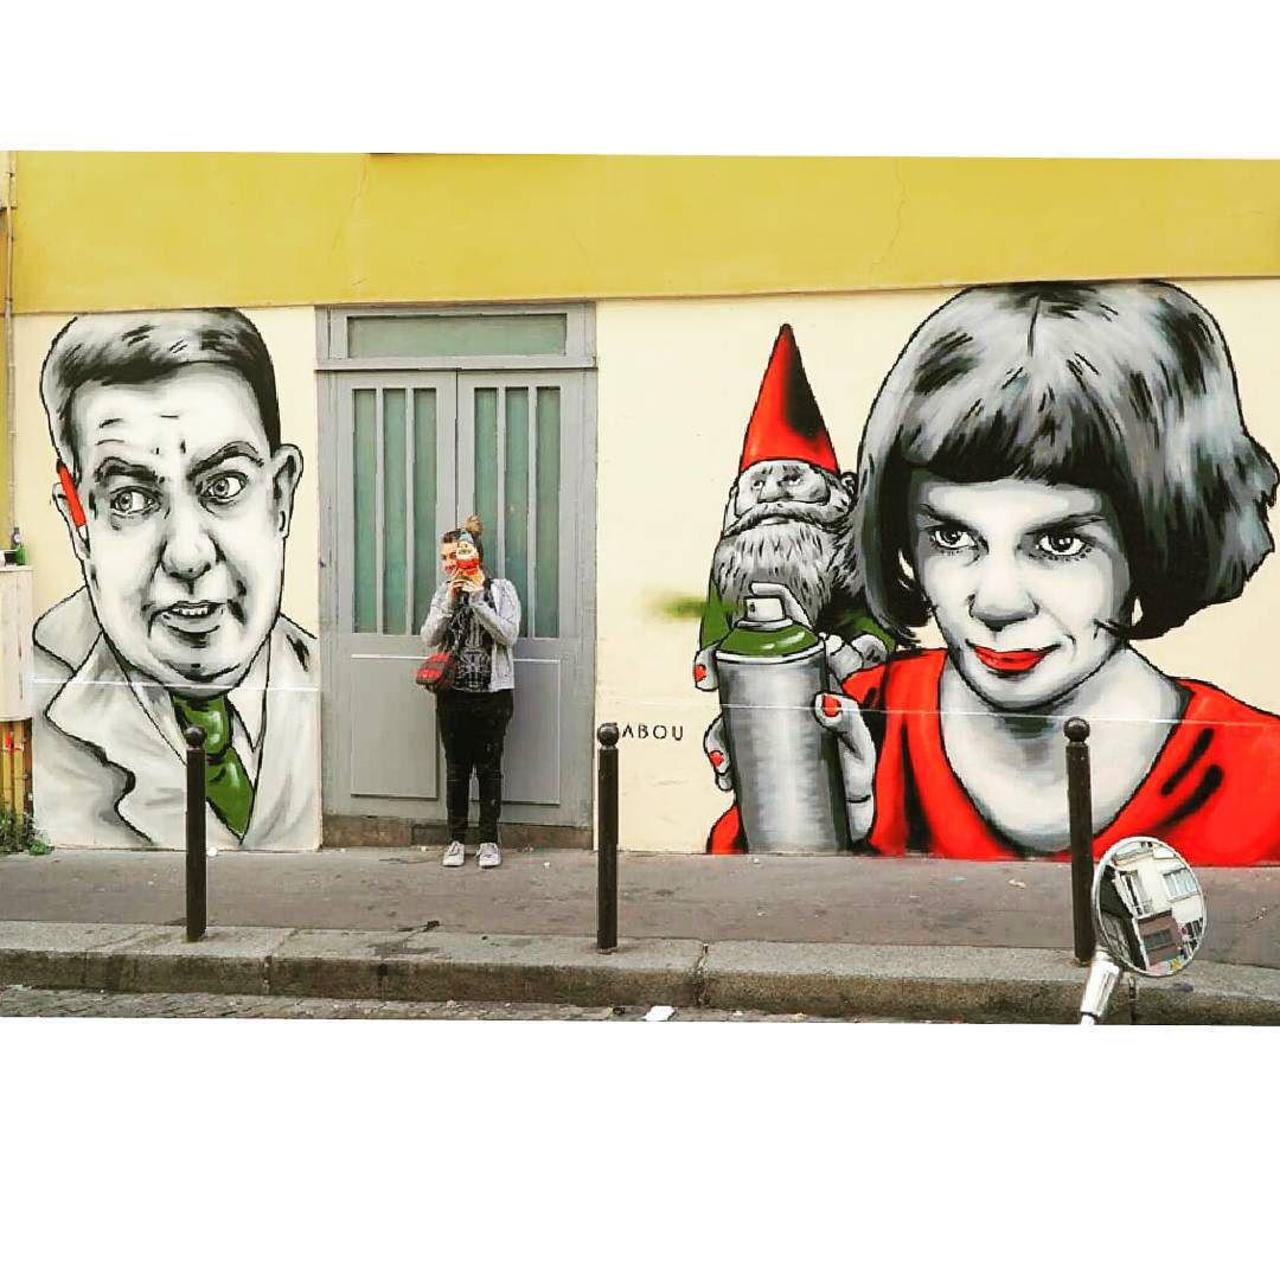 #Paris #graffiti photo by @streetartparischris http://ift.tt/1K2spsm #StreetArt http://t.co/tvUwruS1fv